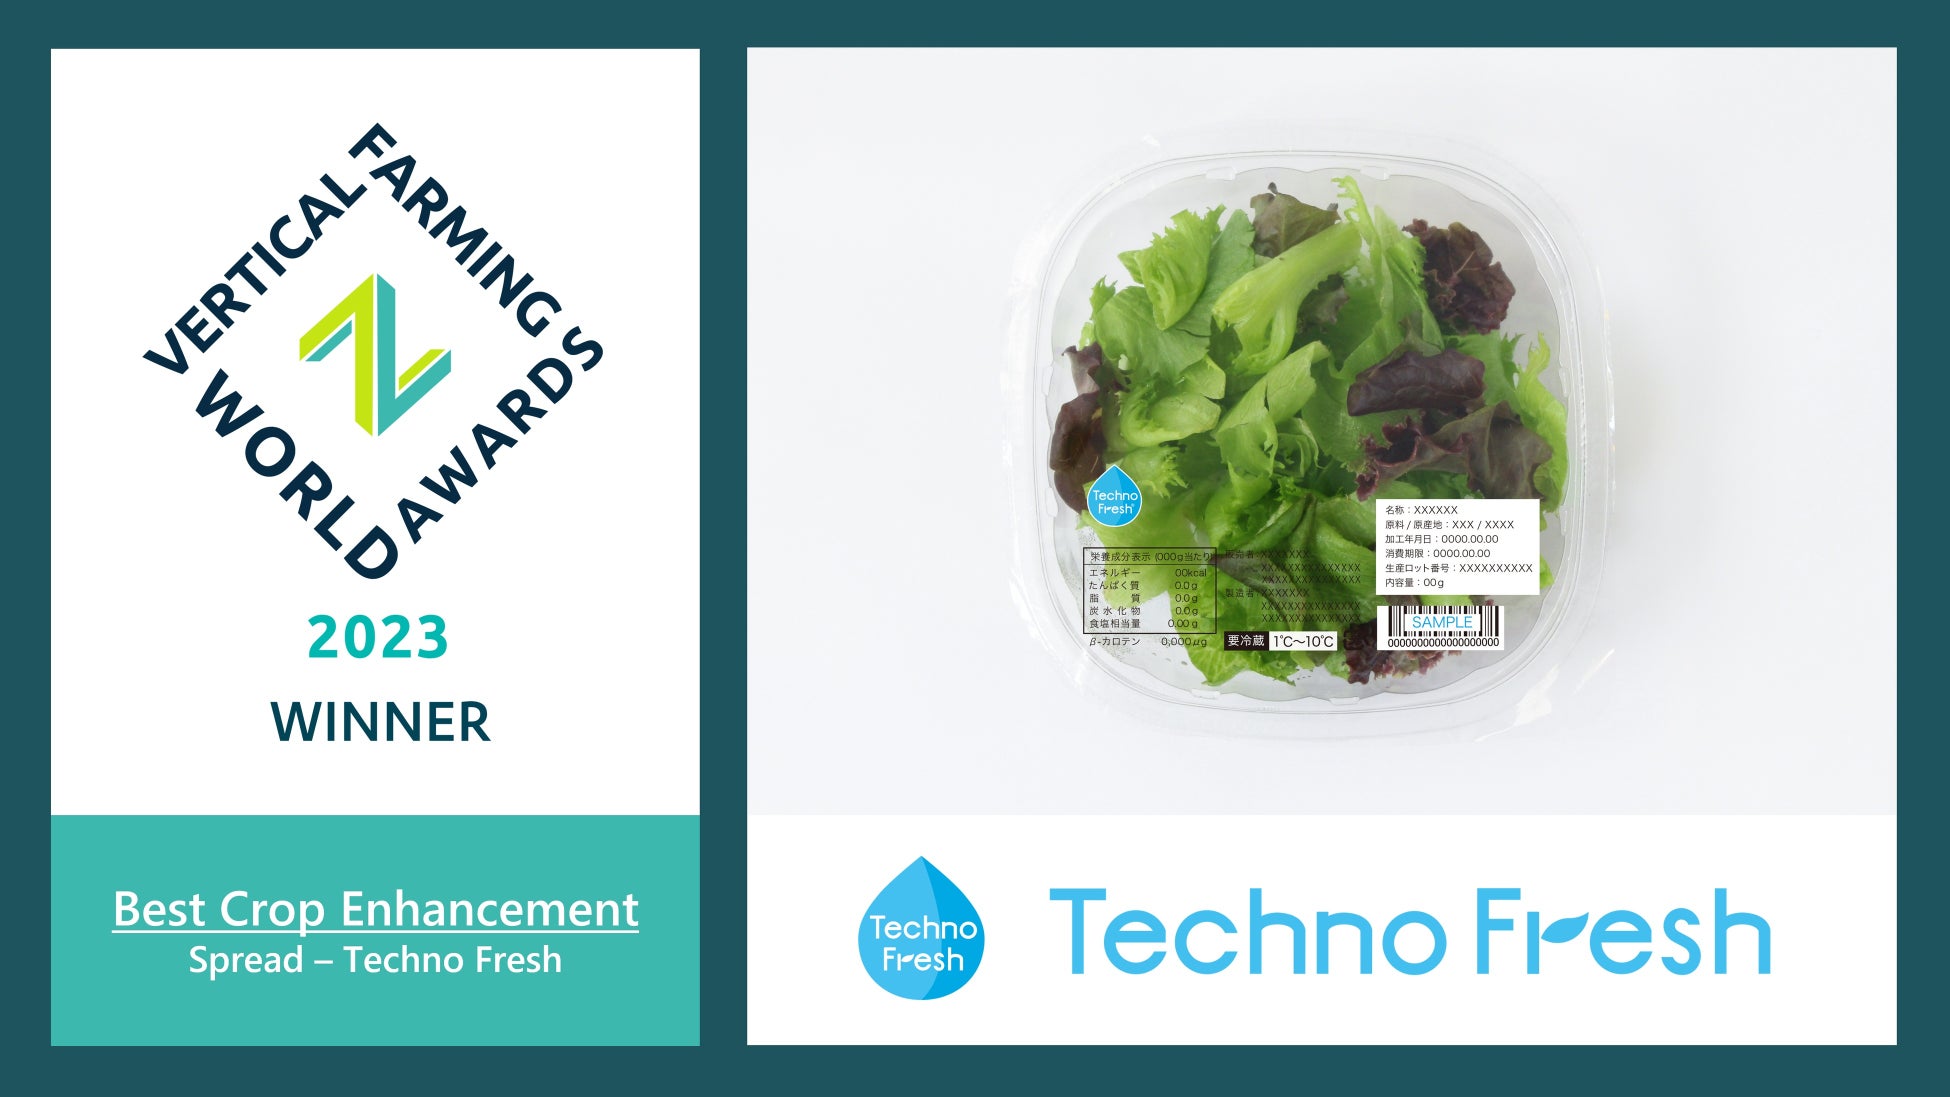 カットレタスの消費期限を6日まで延長した「Techno Fresh」が、世界の優れた植物工場を表彰するVertical Farming World Awardsを受賞